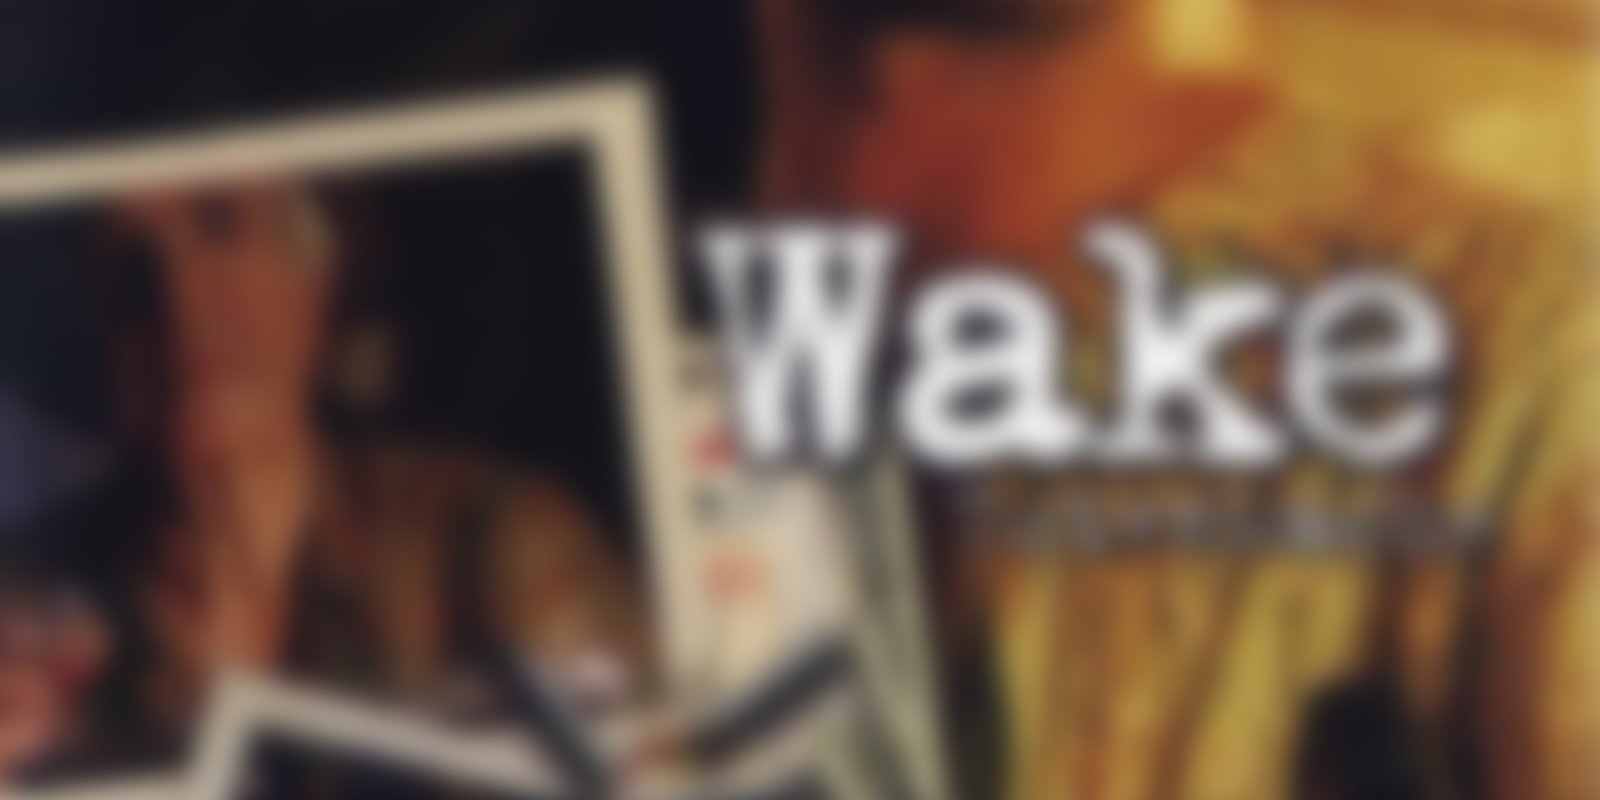 Wake - Totenwache